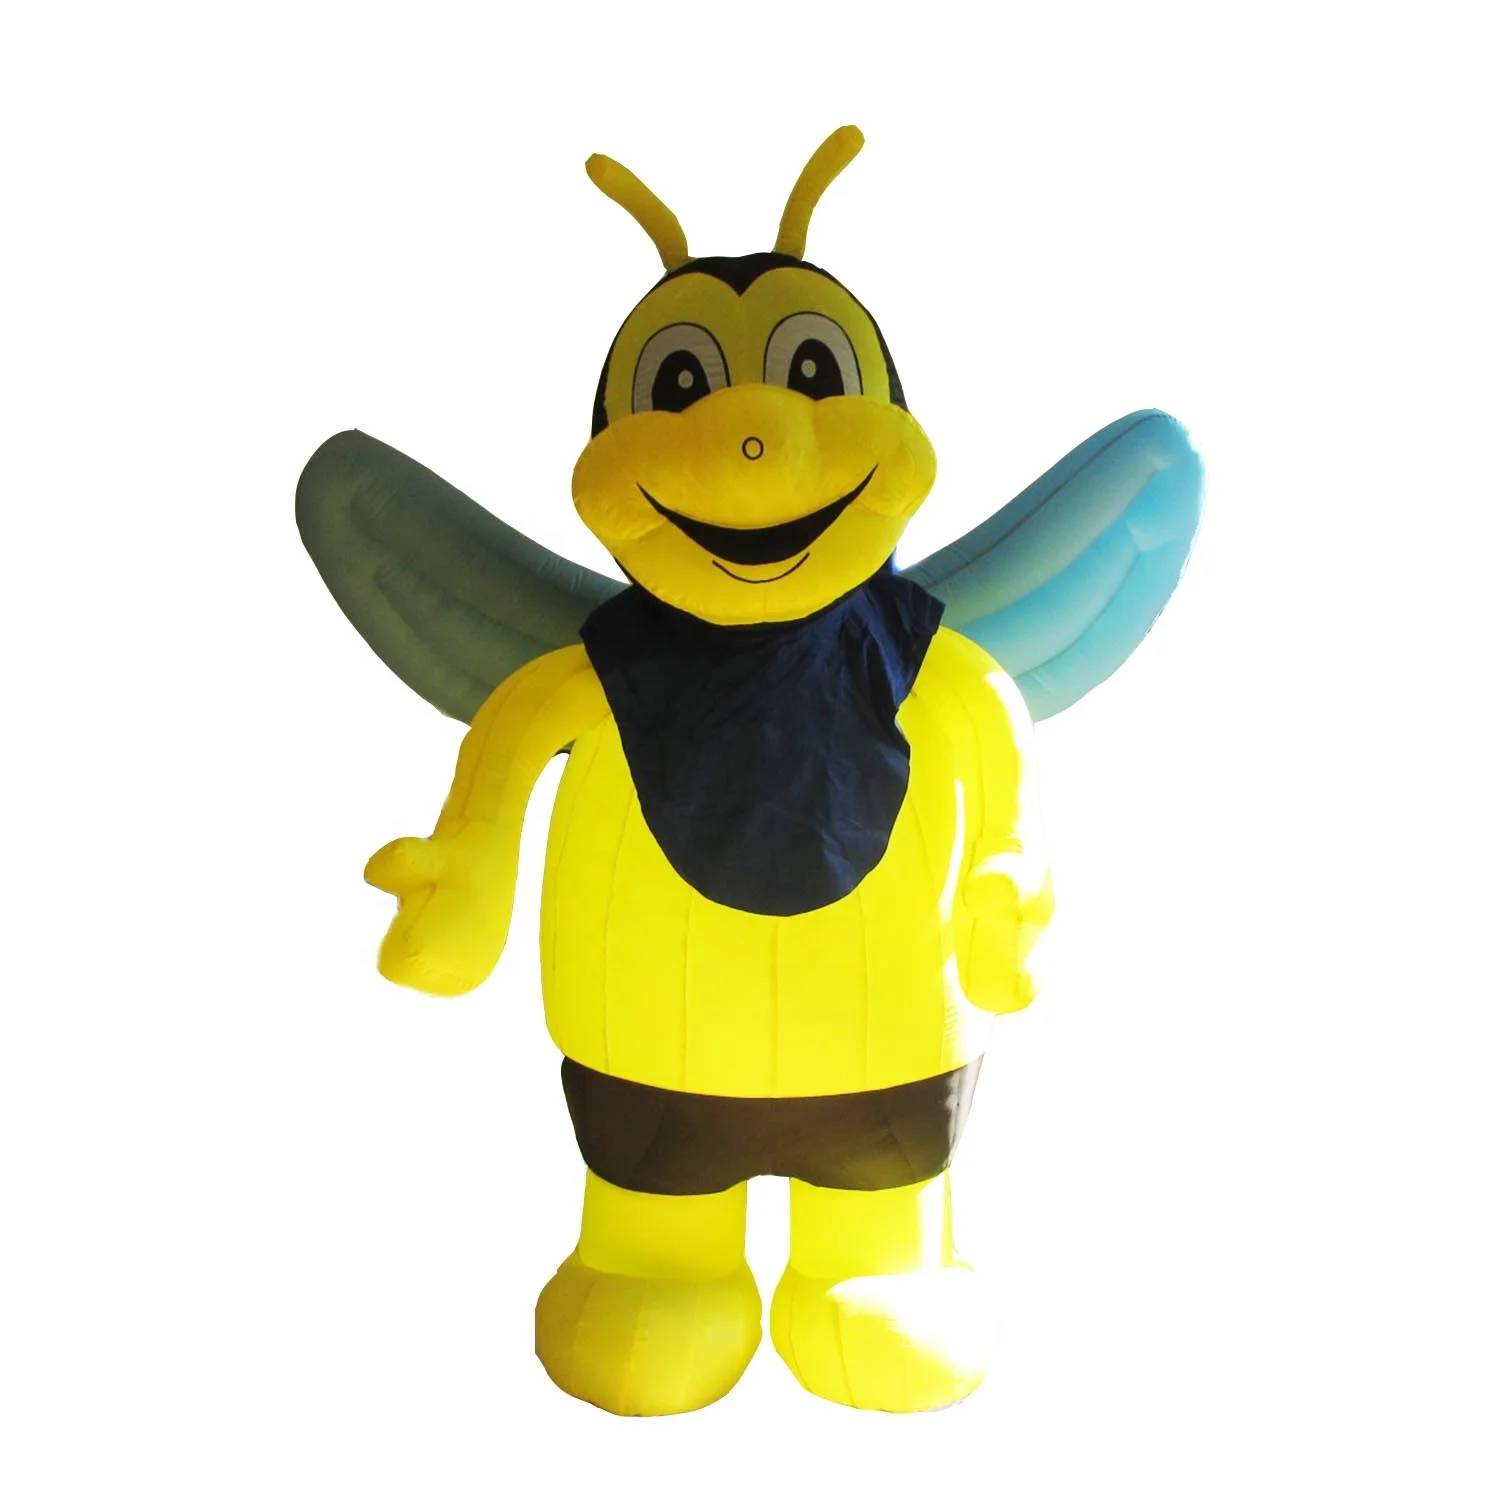 Jenis Kartun Hewan Kustom Iklan Lebah Dan Madu Tiup Untuk Display Buy Kartun Raksasa Inflatable Bumble Bee Model Untuk Acara Yang Indah Kartun Lebah Inflatable Lebah Madu Untuk Iklan Dekorasi Disesuaikan